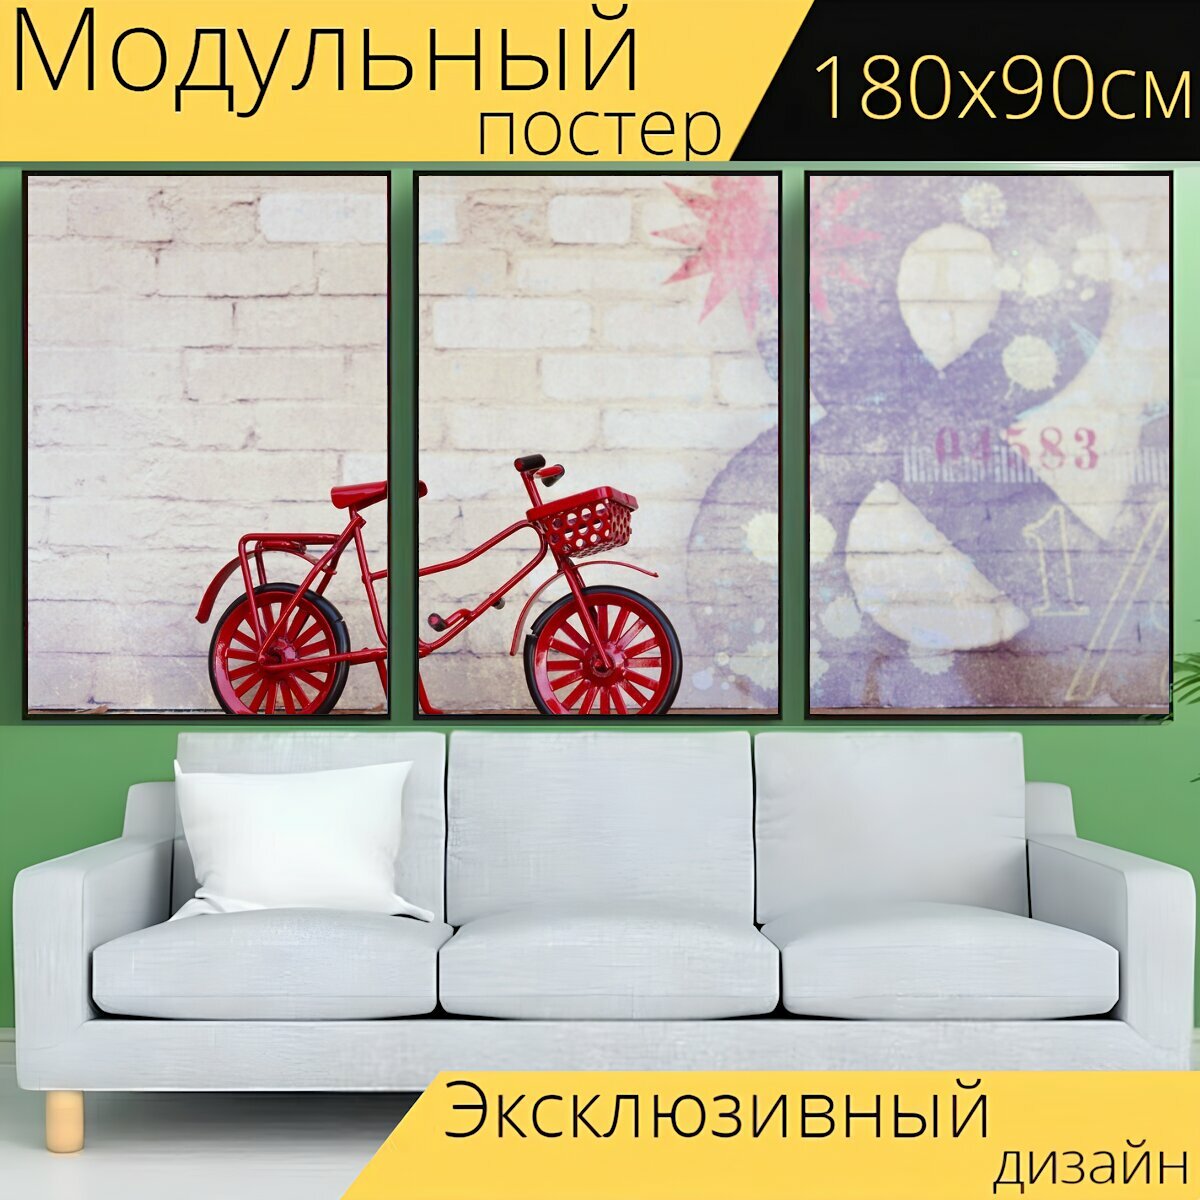 Модульный постер "Велосипед, красный, цикл" 180 x 90 см. для интерьера